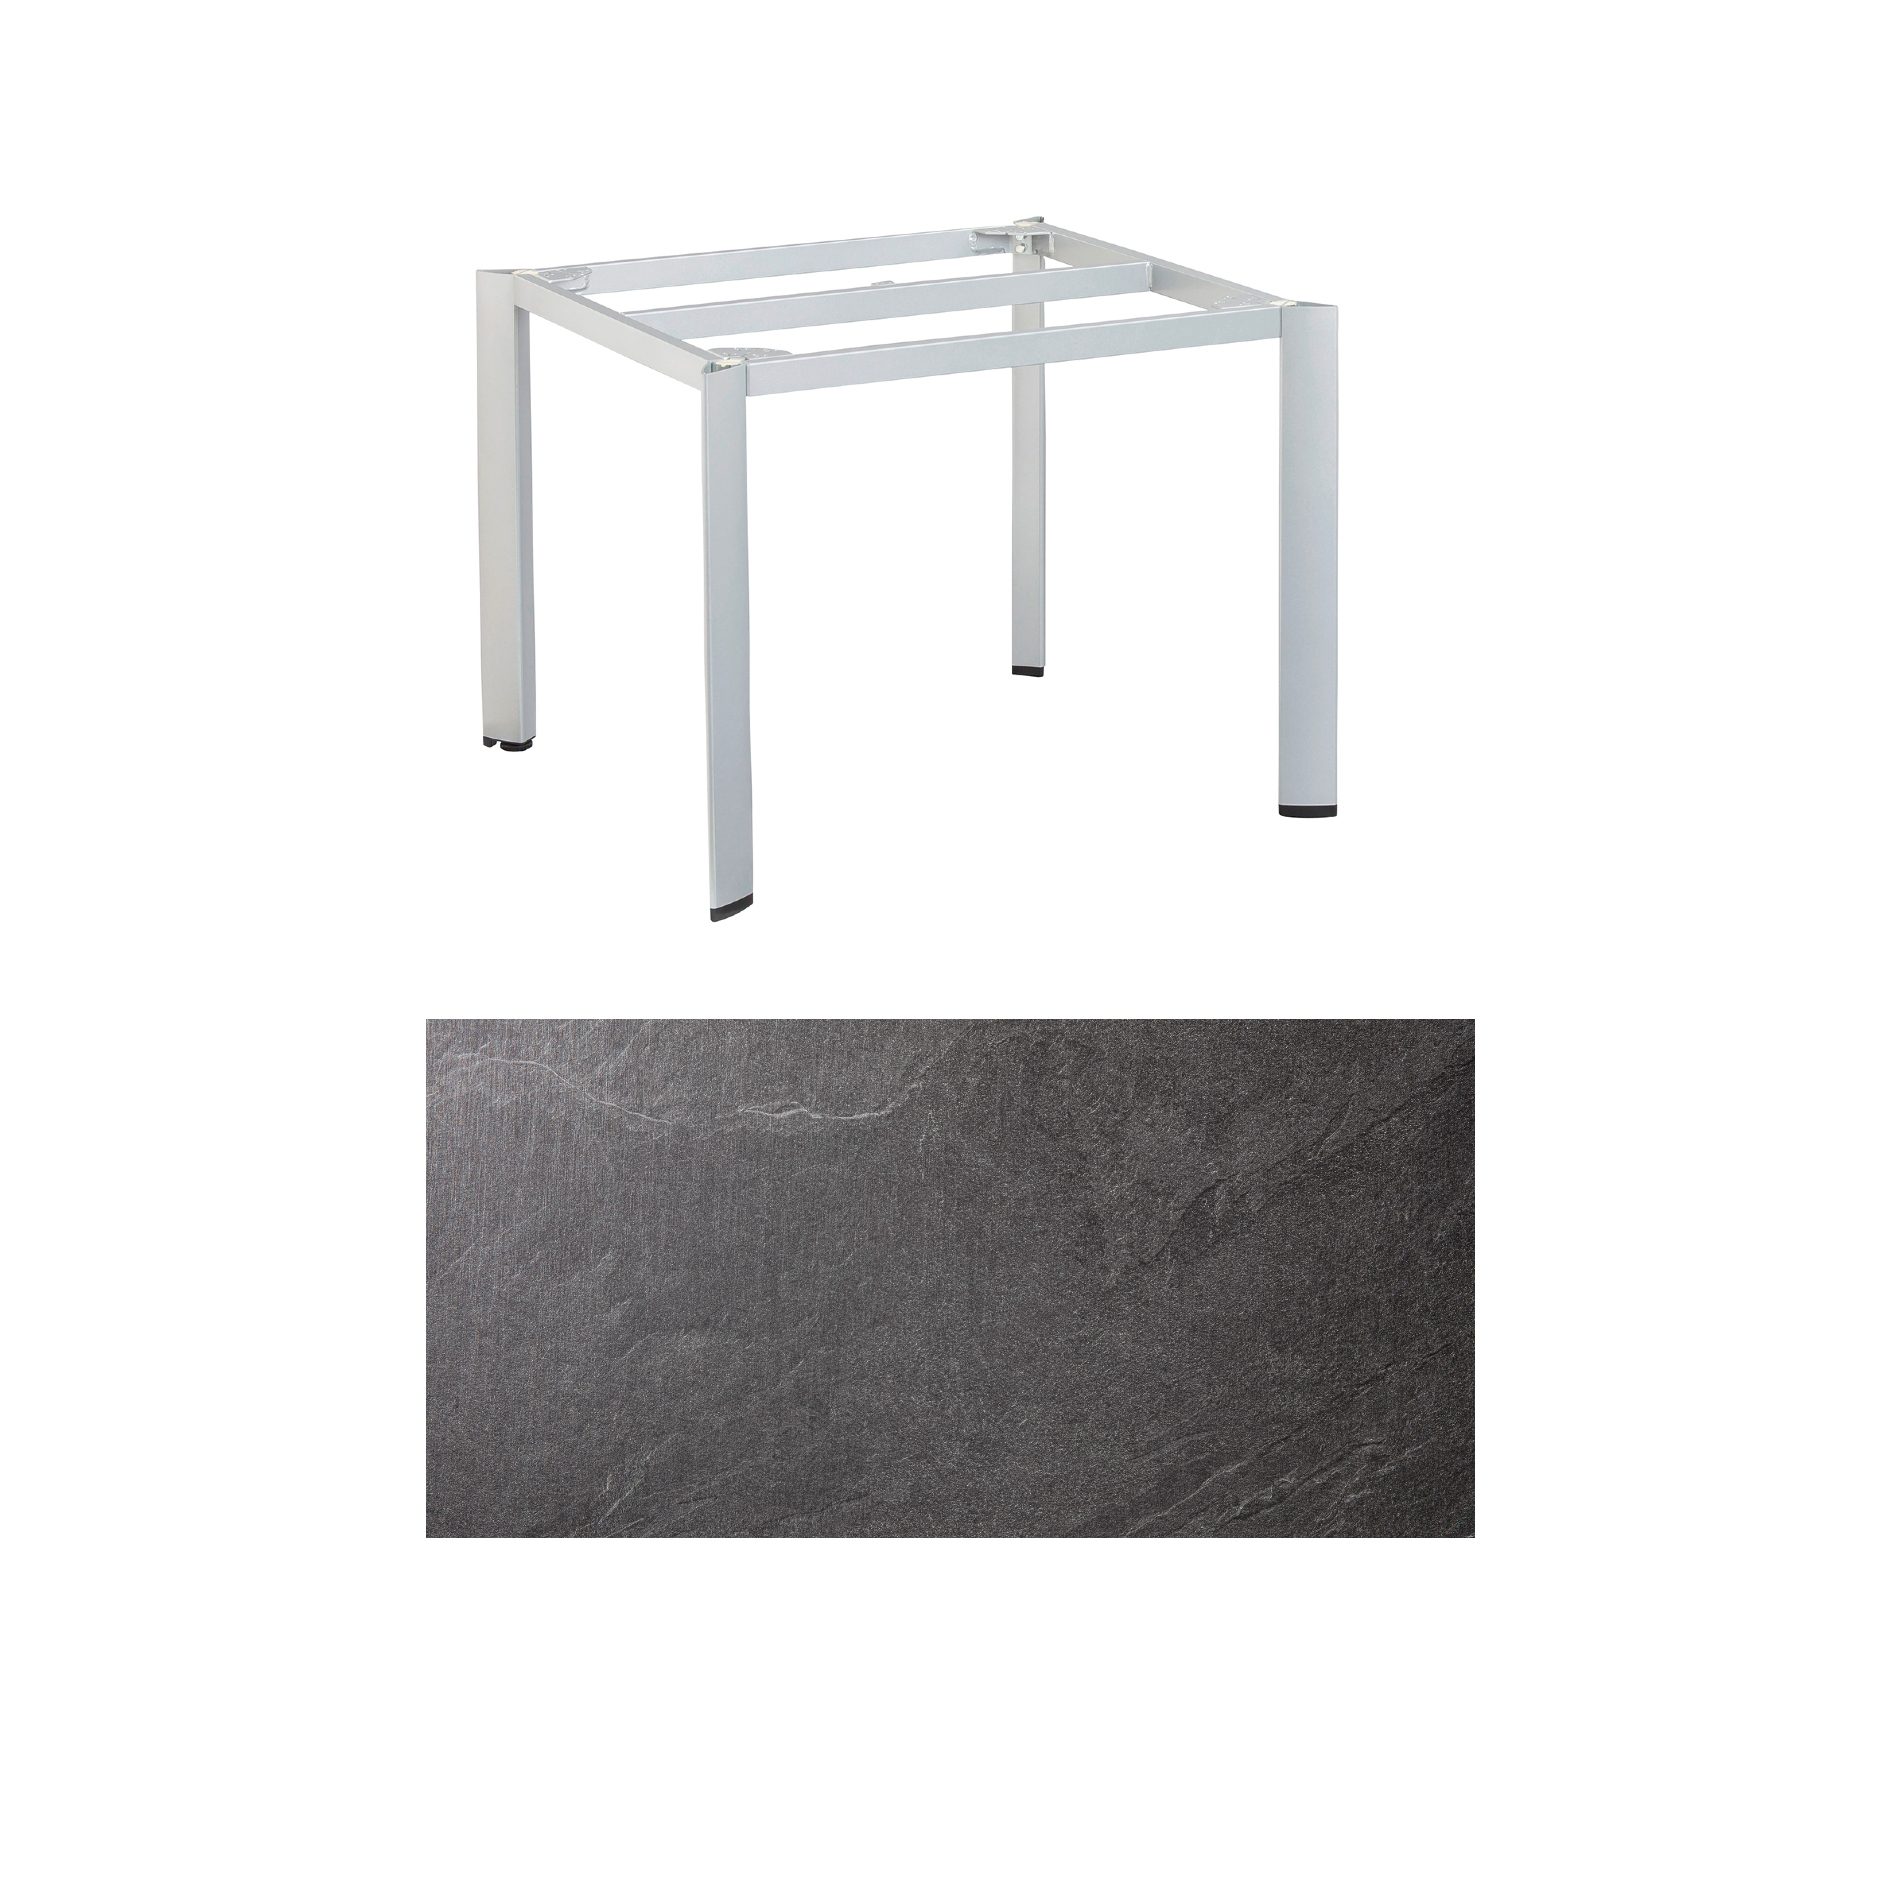 Kettler "Edge" Gartentisch, Gestell Aluminium silber, Tischplatte HPL Jura anthrazit, 95x95 cm